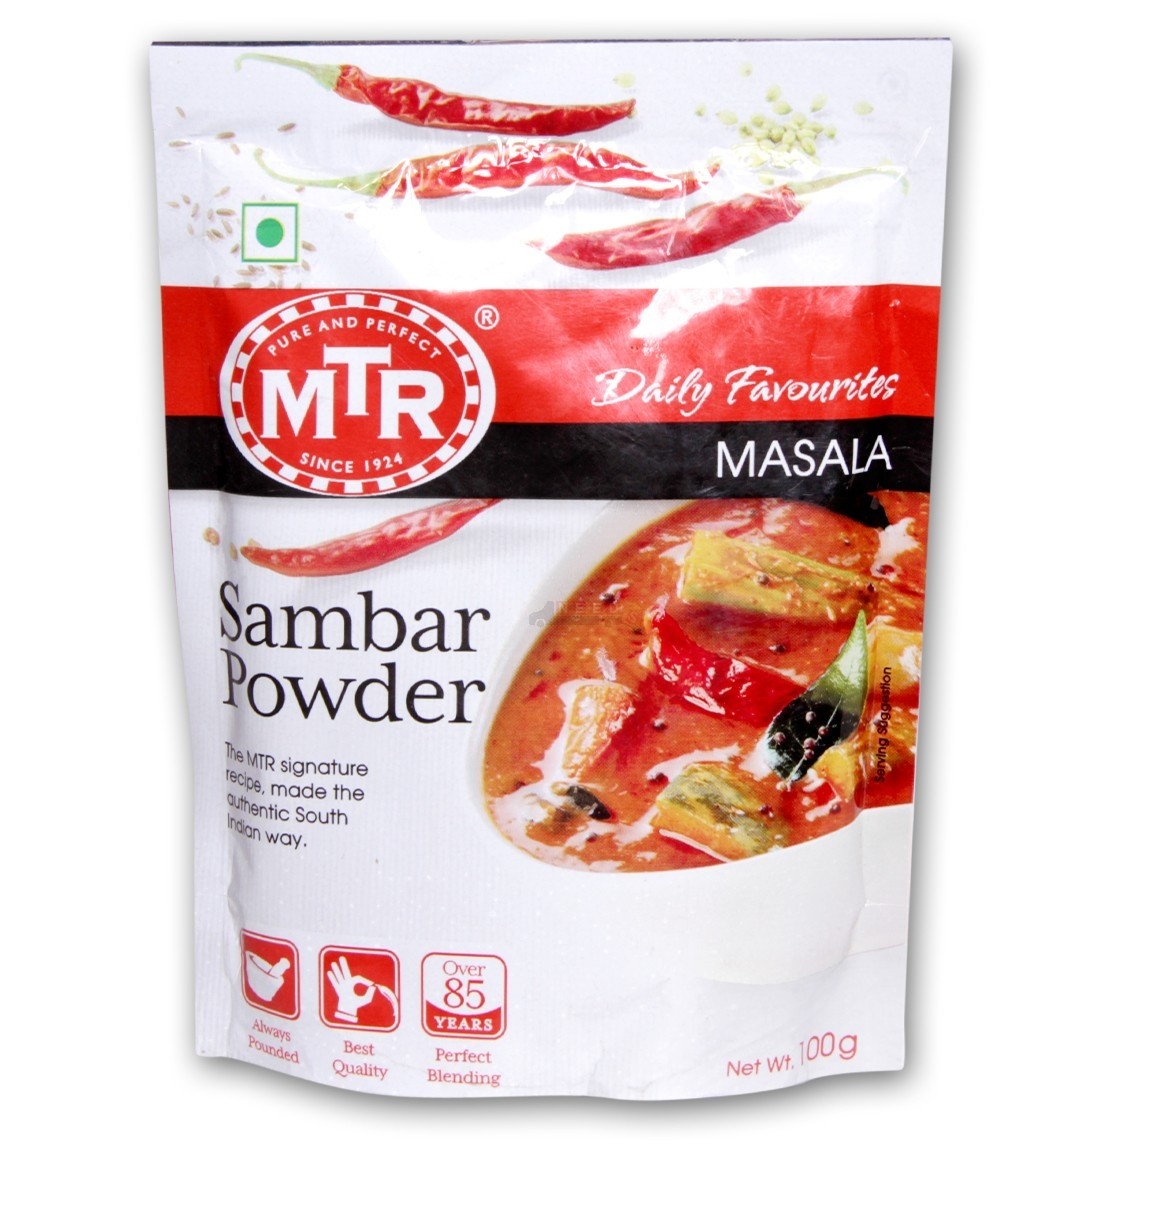 mtr sambar powder